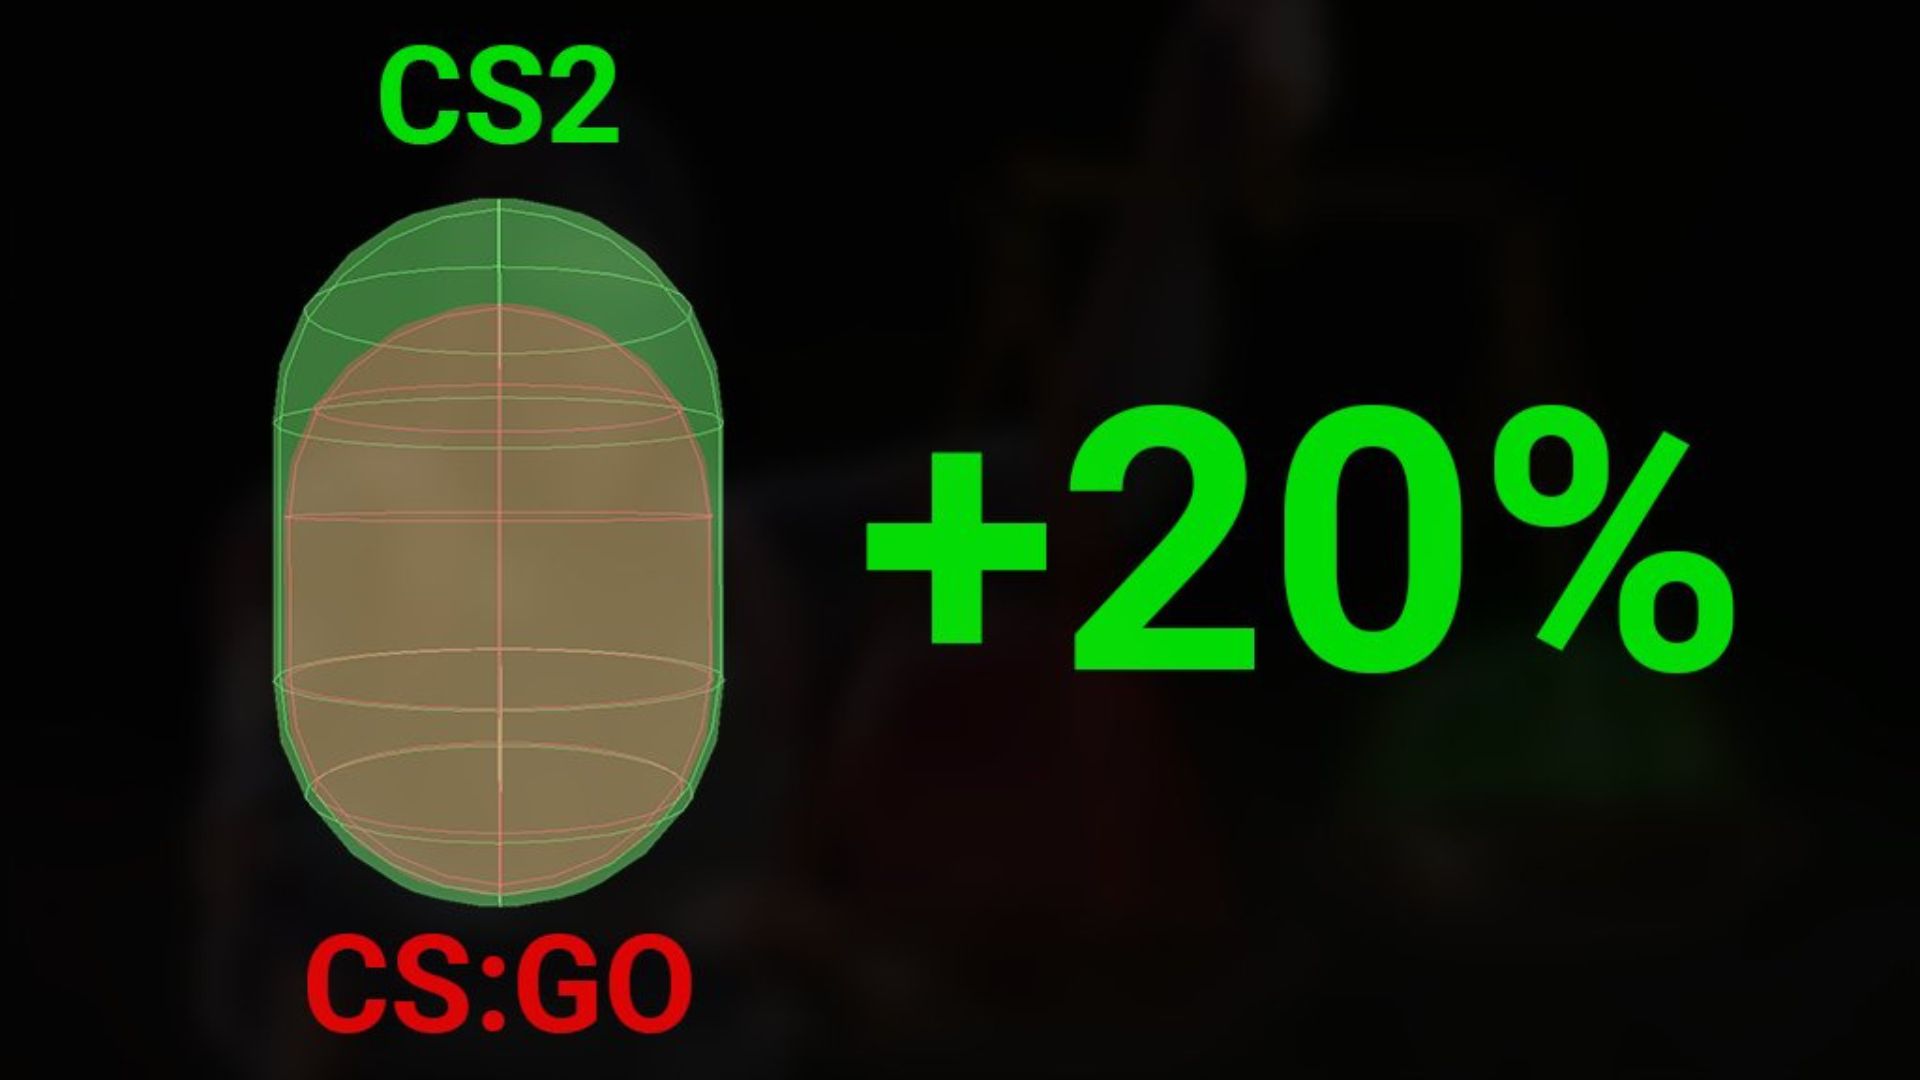 Counter-Strike 2 a l'air convivial - et c'est une excellente nouvelle : une image comparant la hitbox dans les jeux Valve FPS CSGO et CS2